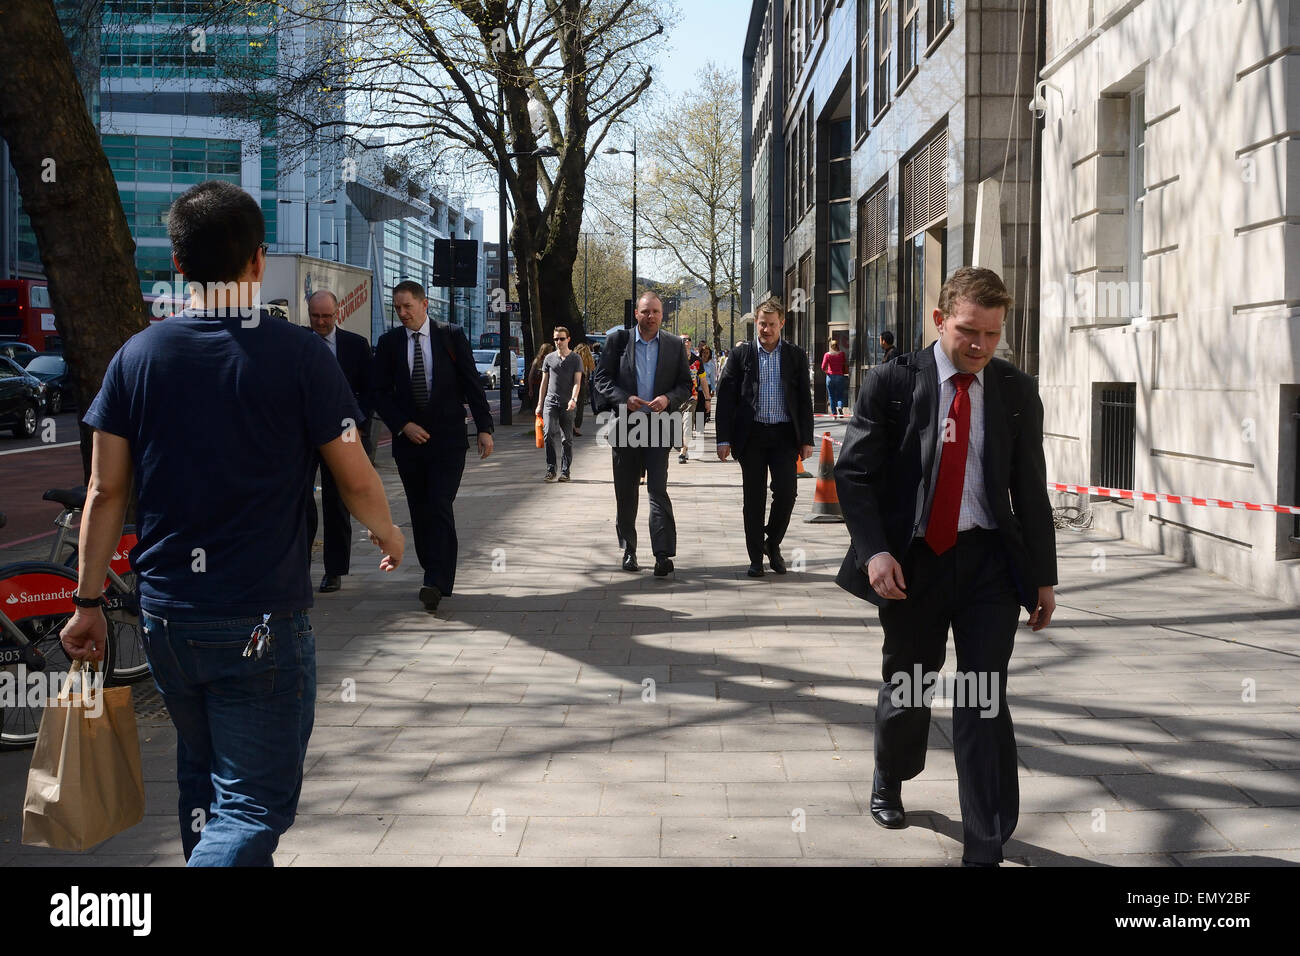 Uomo in jeans & T-shirt camminare davanti agli uomini in abiti sul marciapiede in Londra Foto Stock